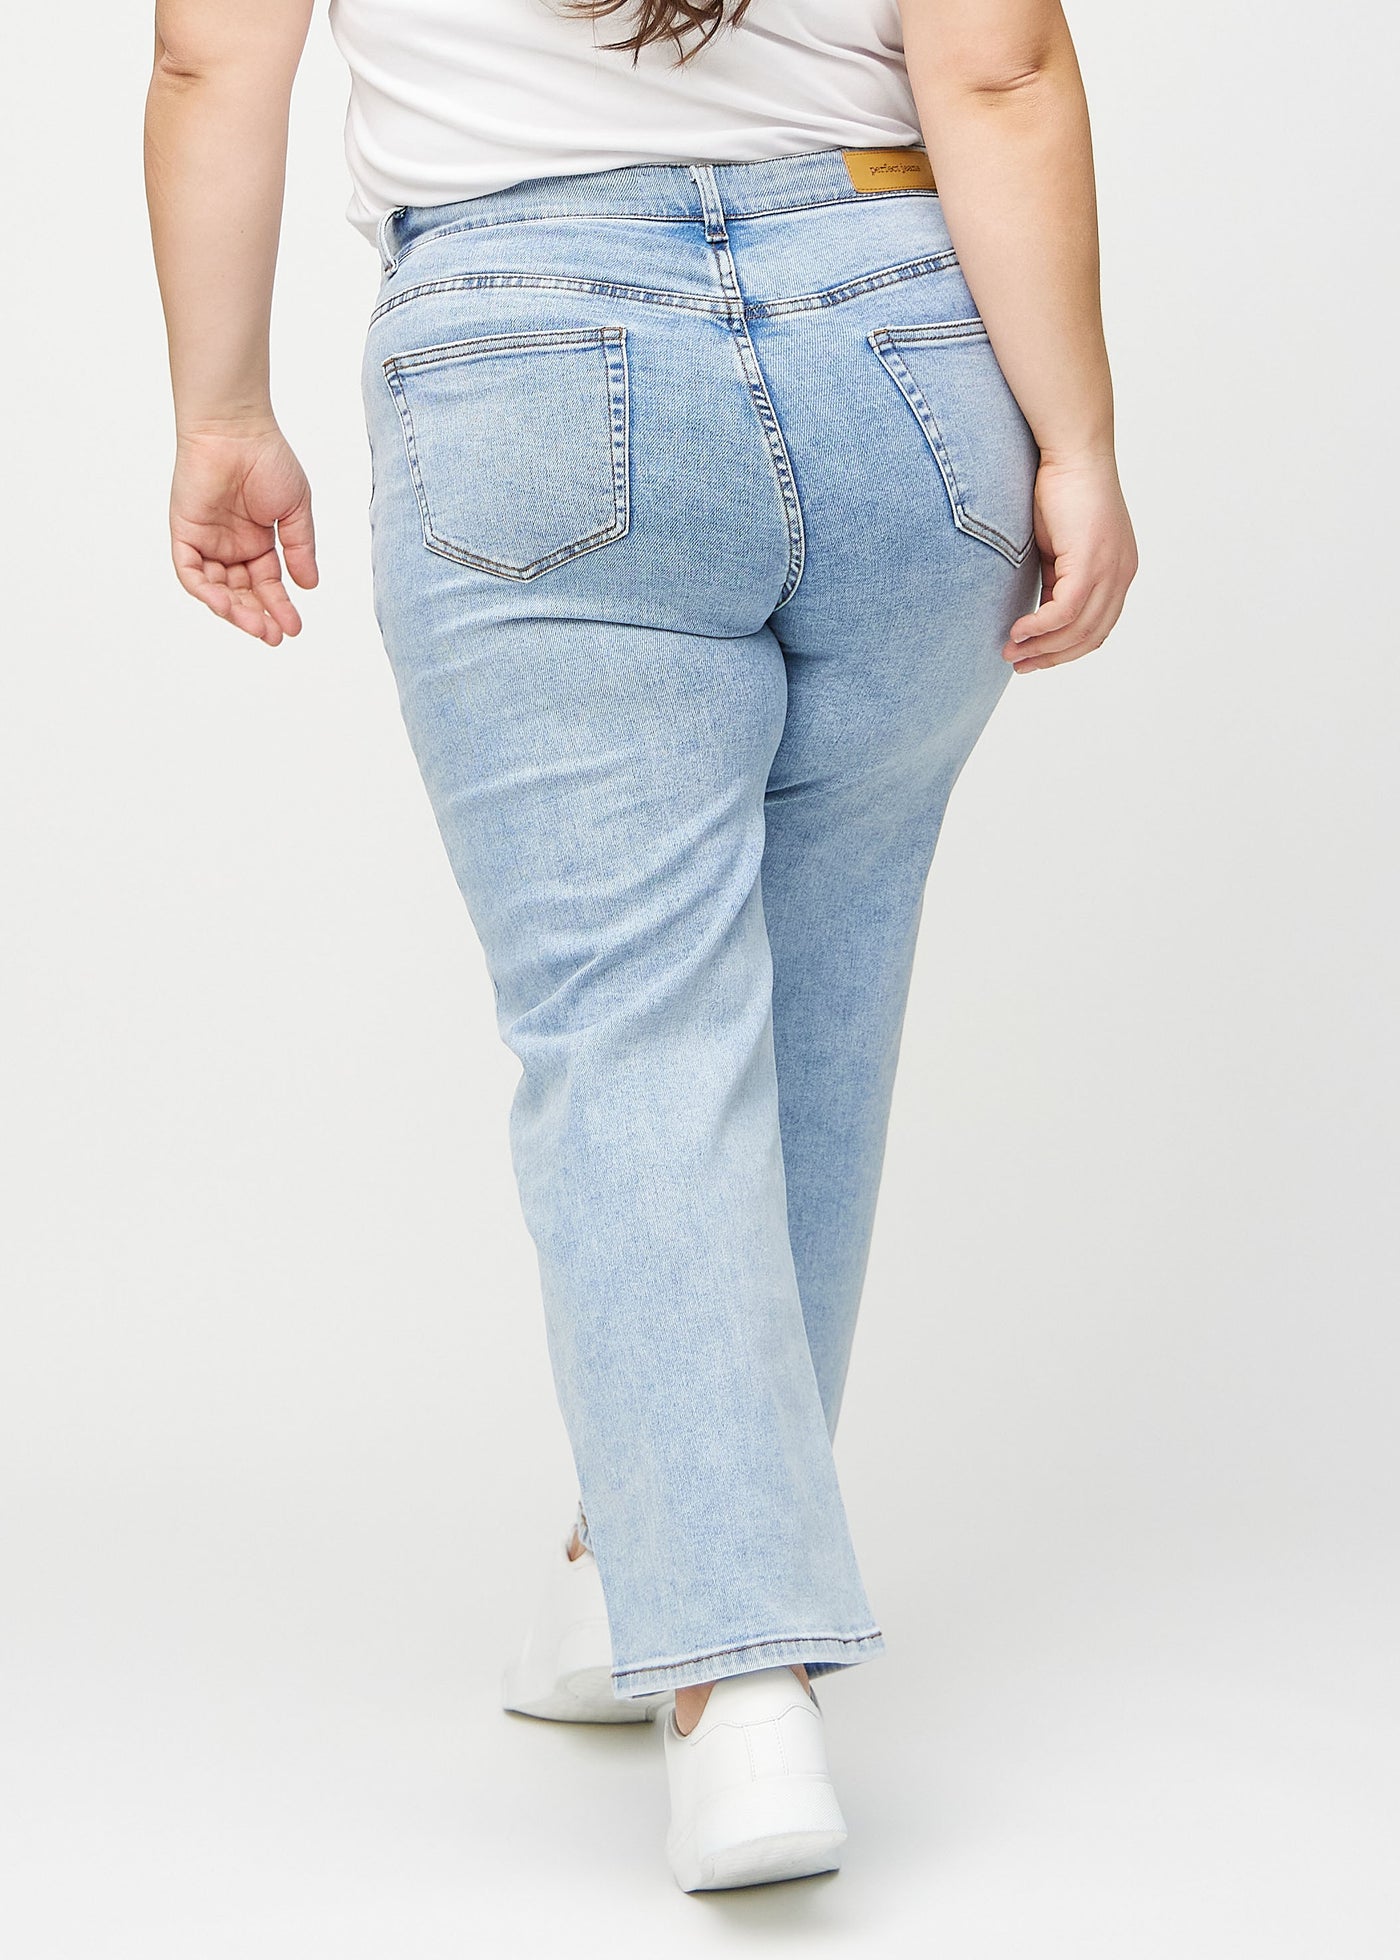 Lys denim loose jeans set bagfra på en plus-size model, så man kan se hele produktet.